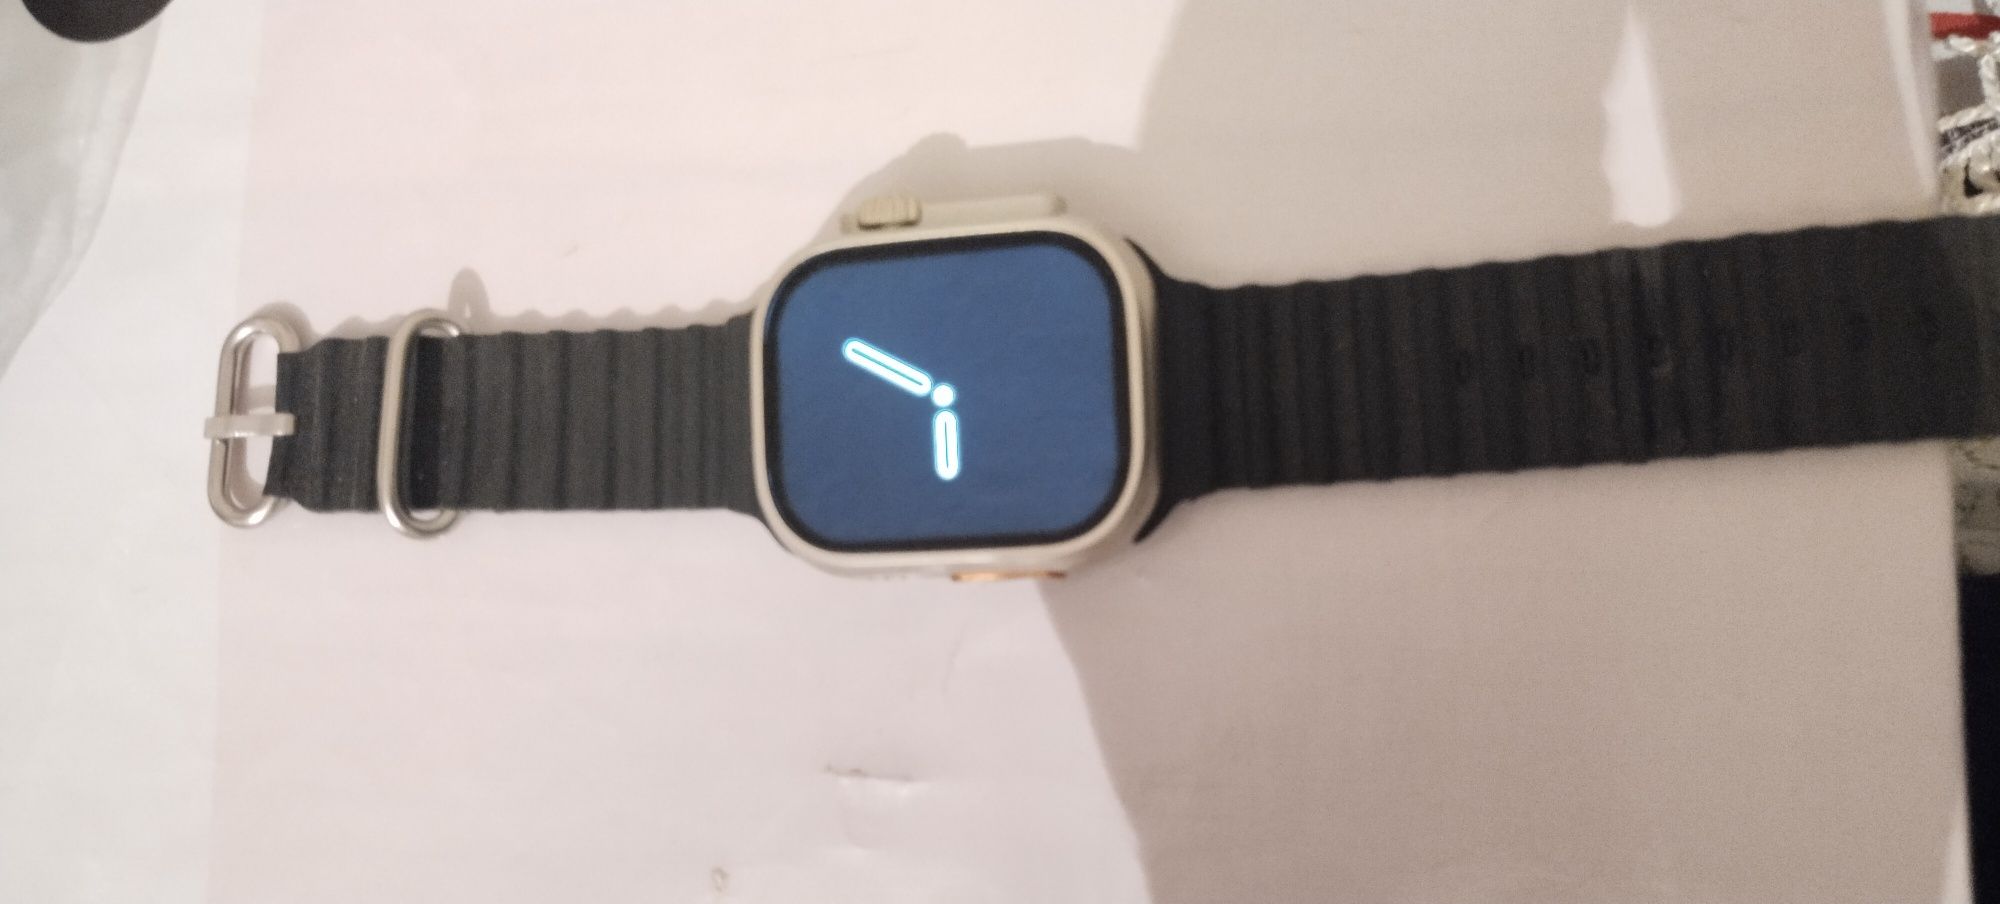 Smart watch T900 ultra